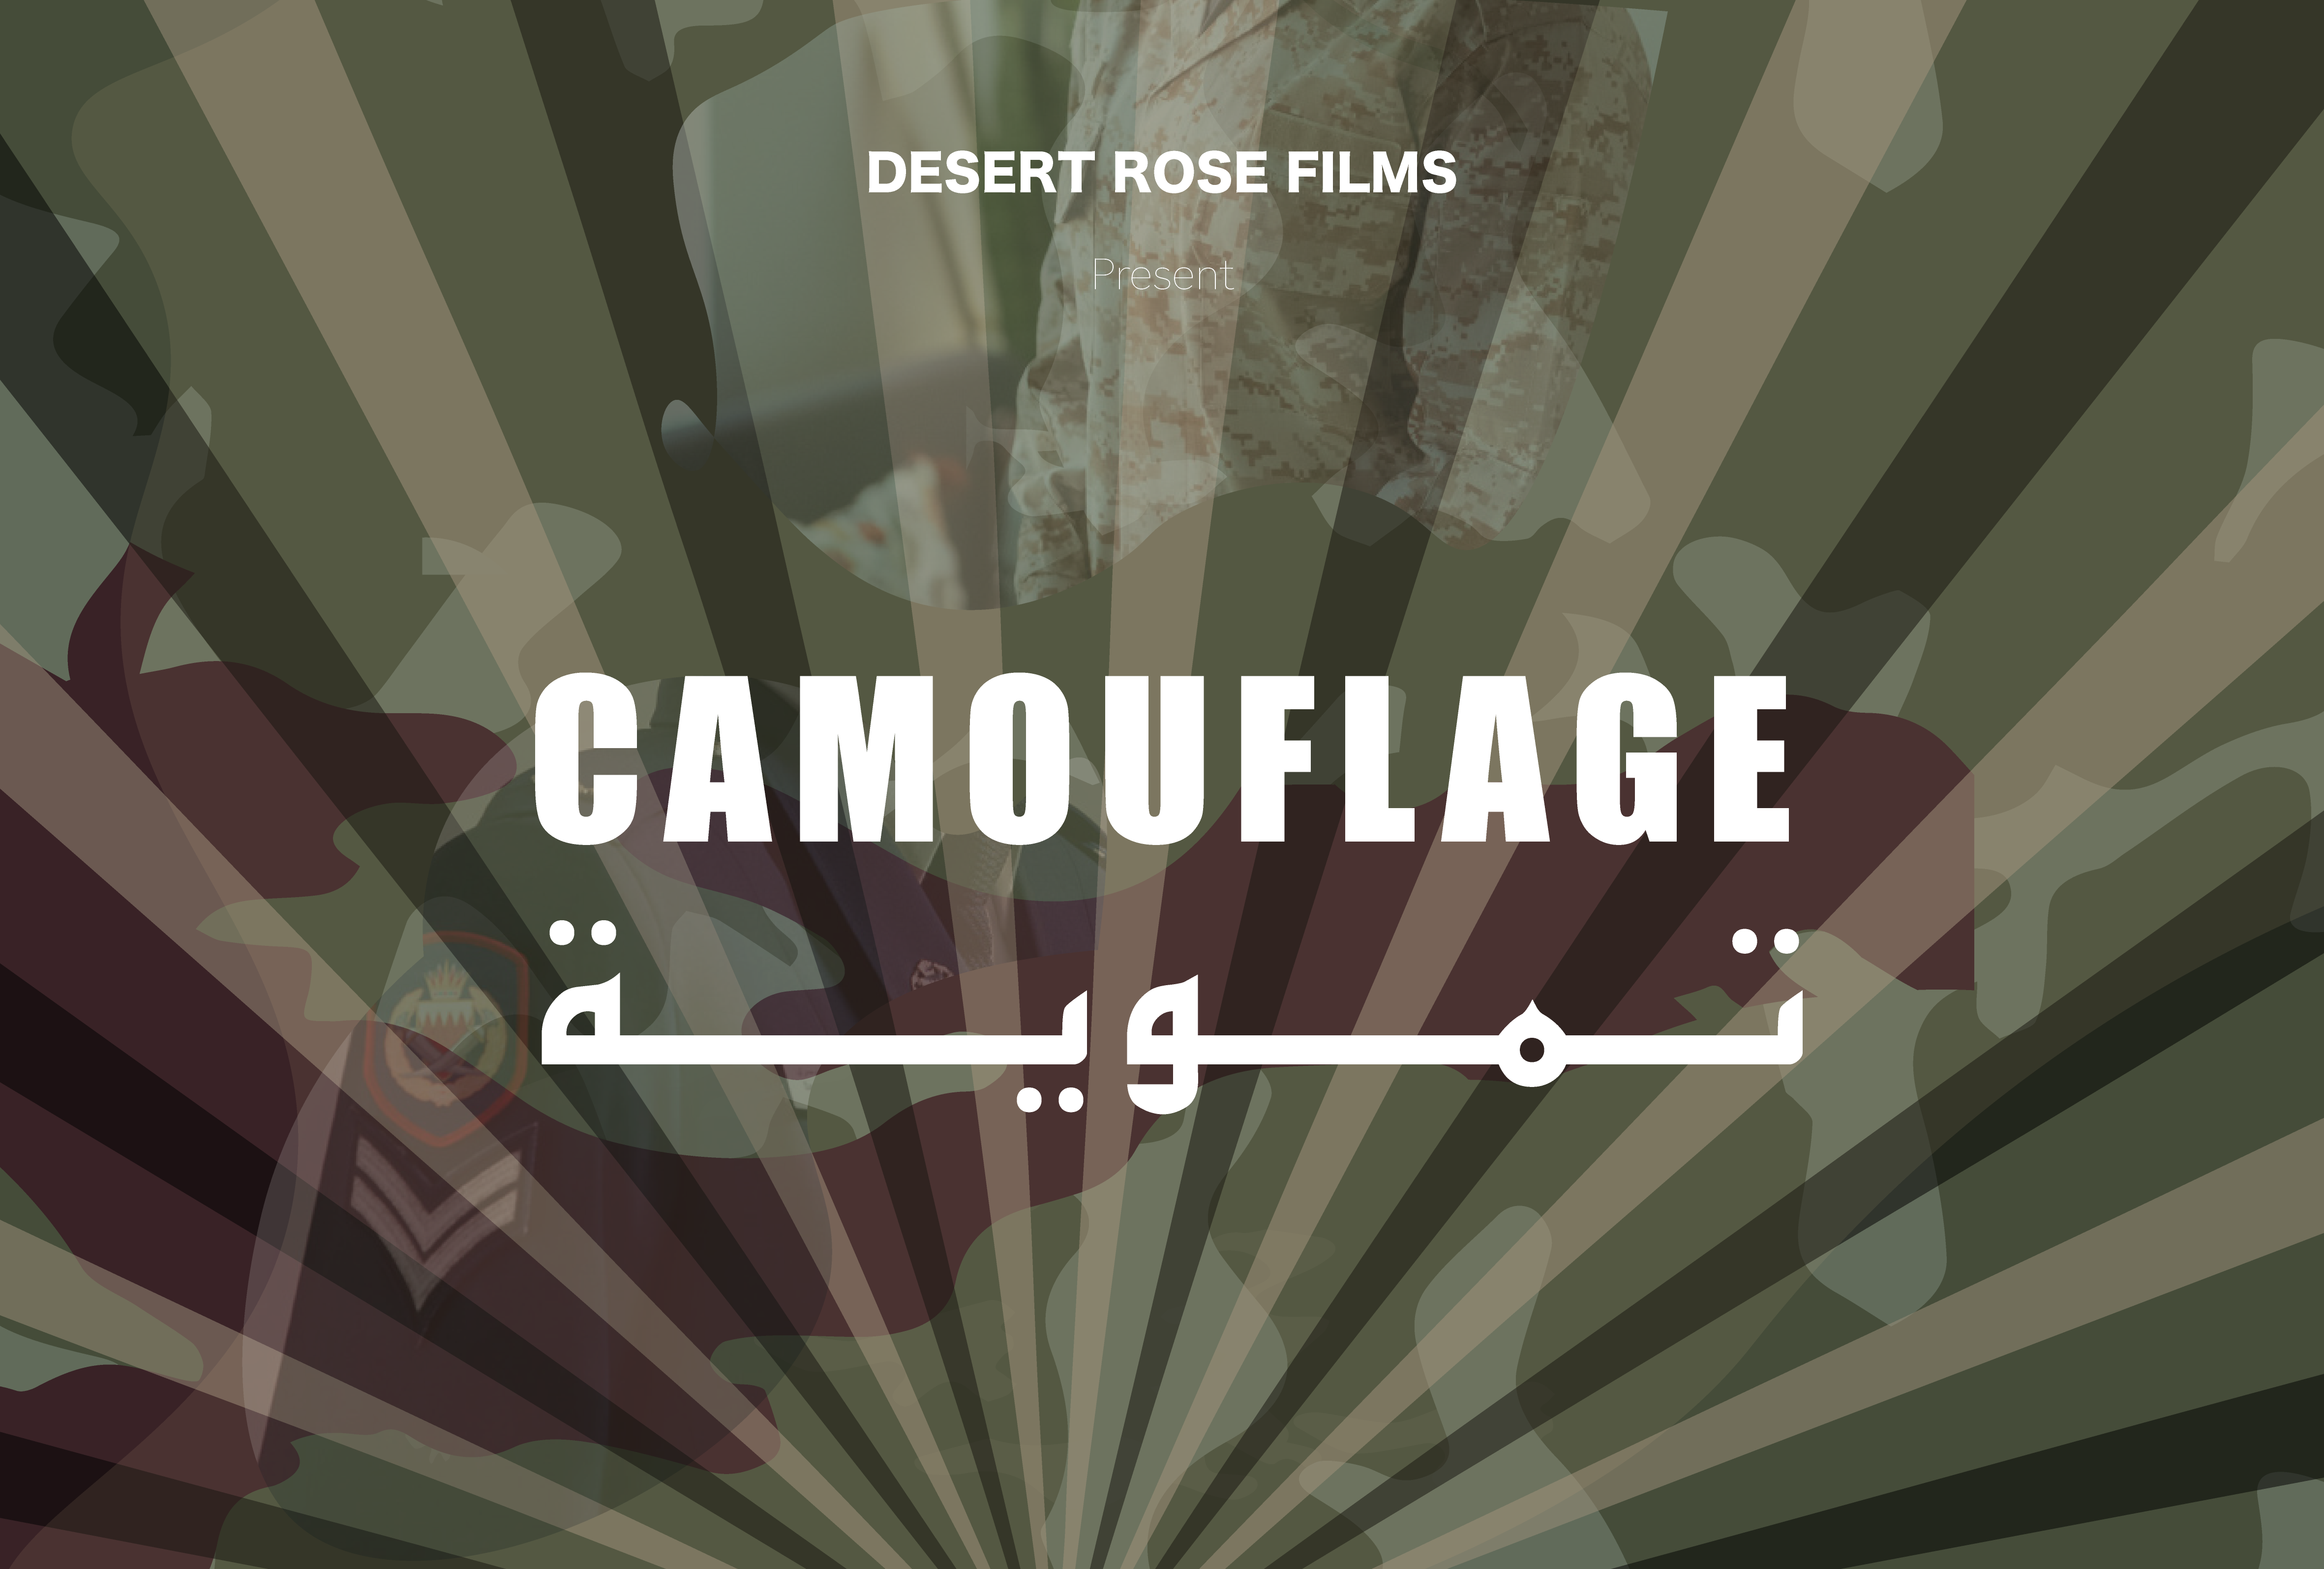 Camouflage Desert Rose Films